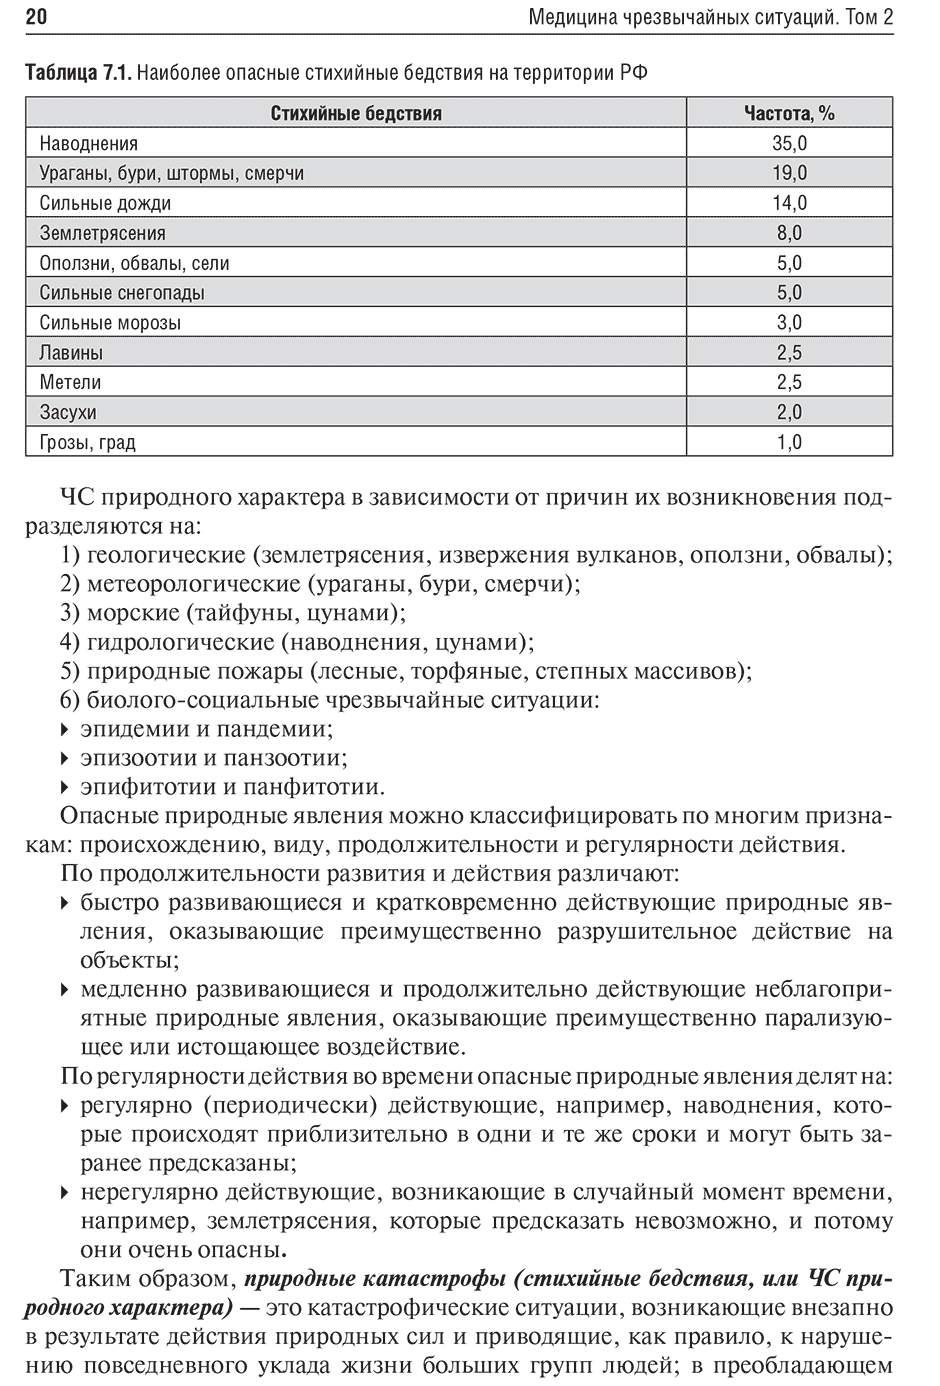 Таблица 7.1. Наиболее опасные стихийные бедствия на территории РФ